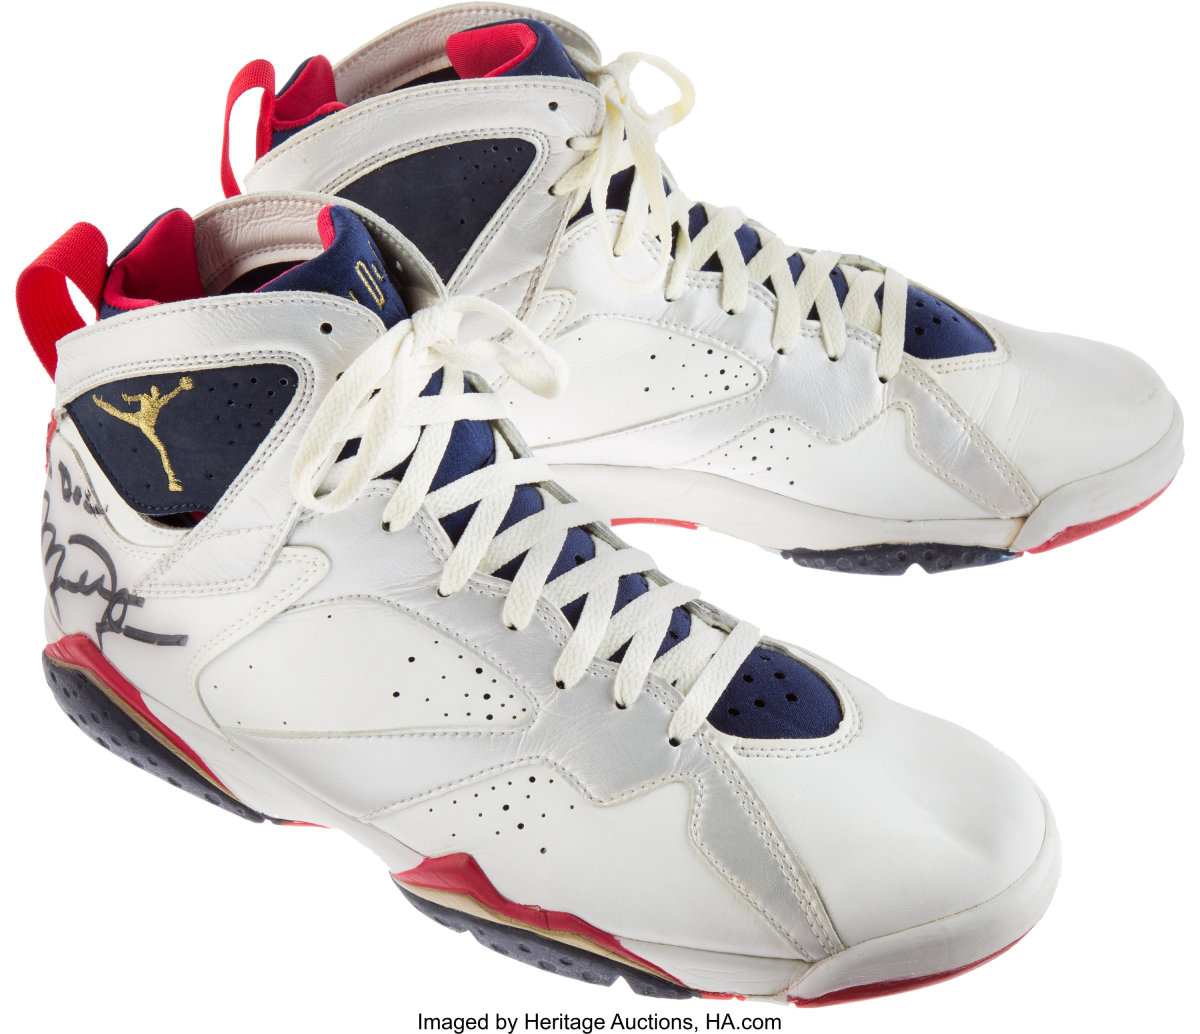 Signed Michael Jordan 1992 Olympic game-worn Nike Air Jordan shoes.